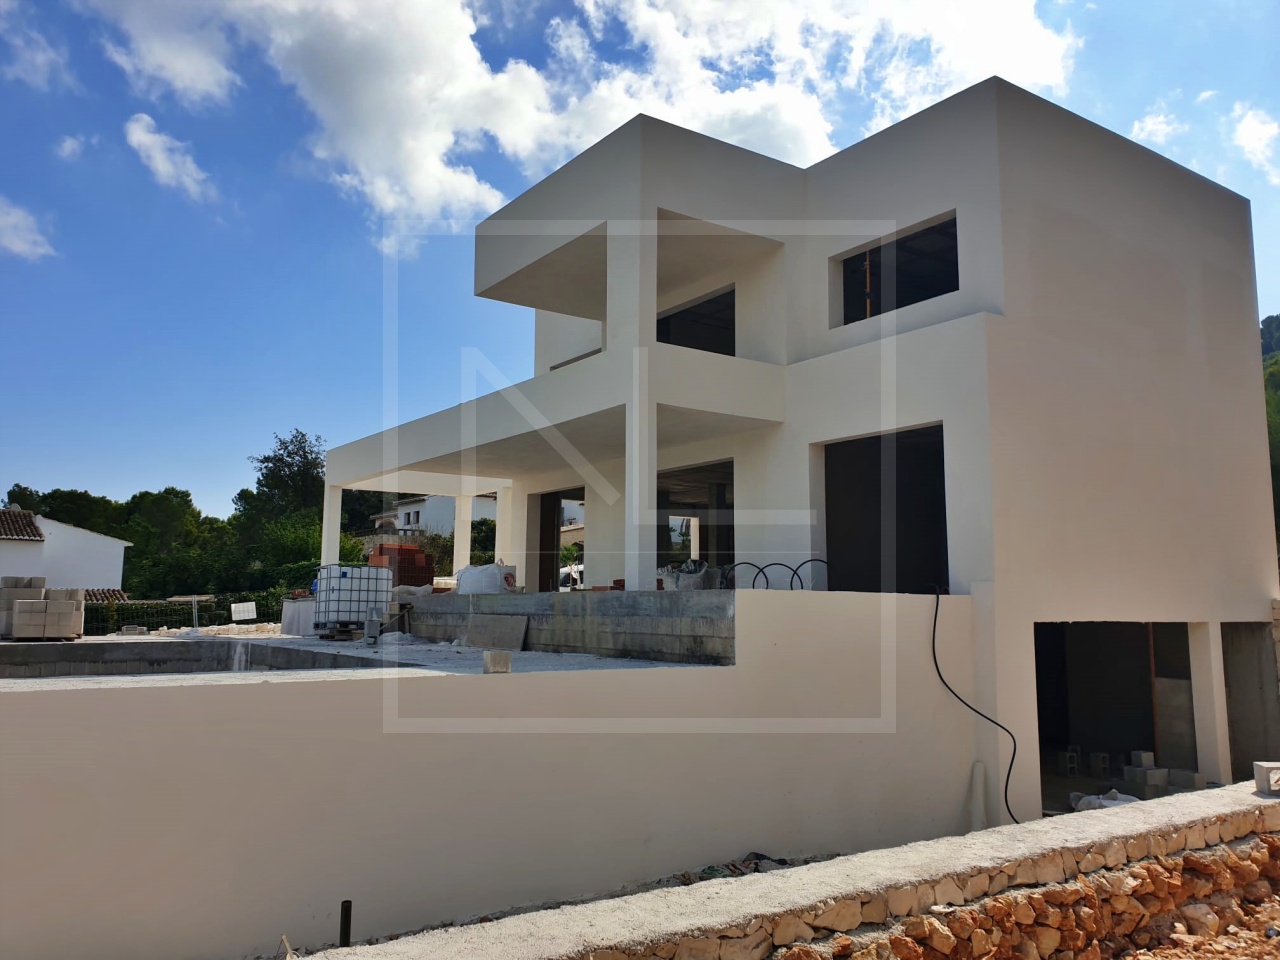 Villa de 3 dormitorios y 3 baños en venta en Javea